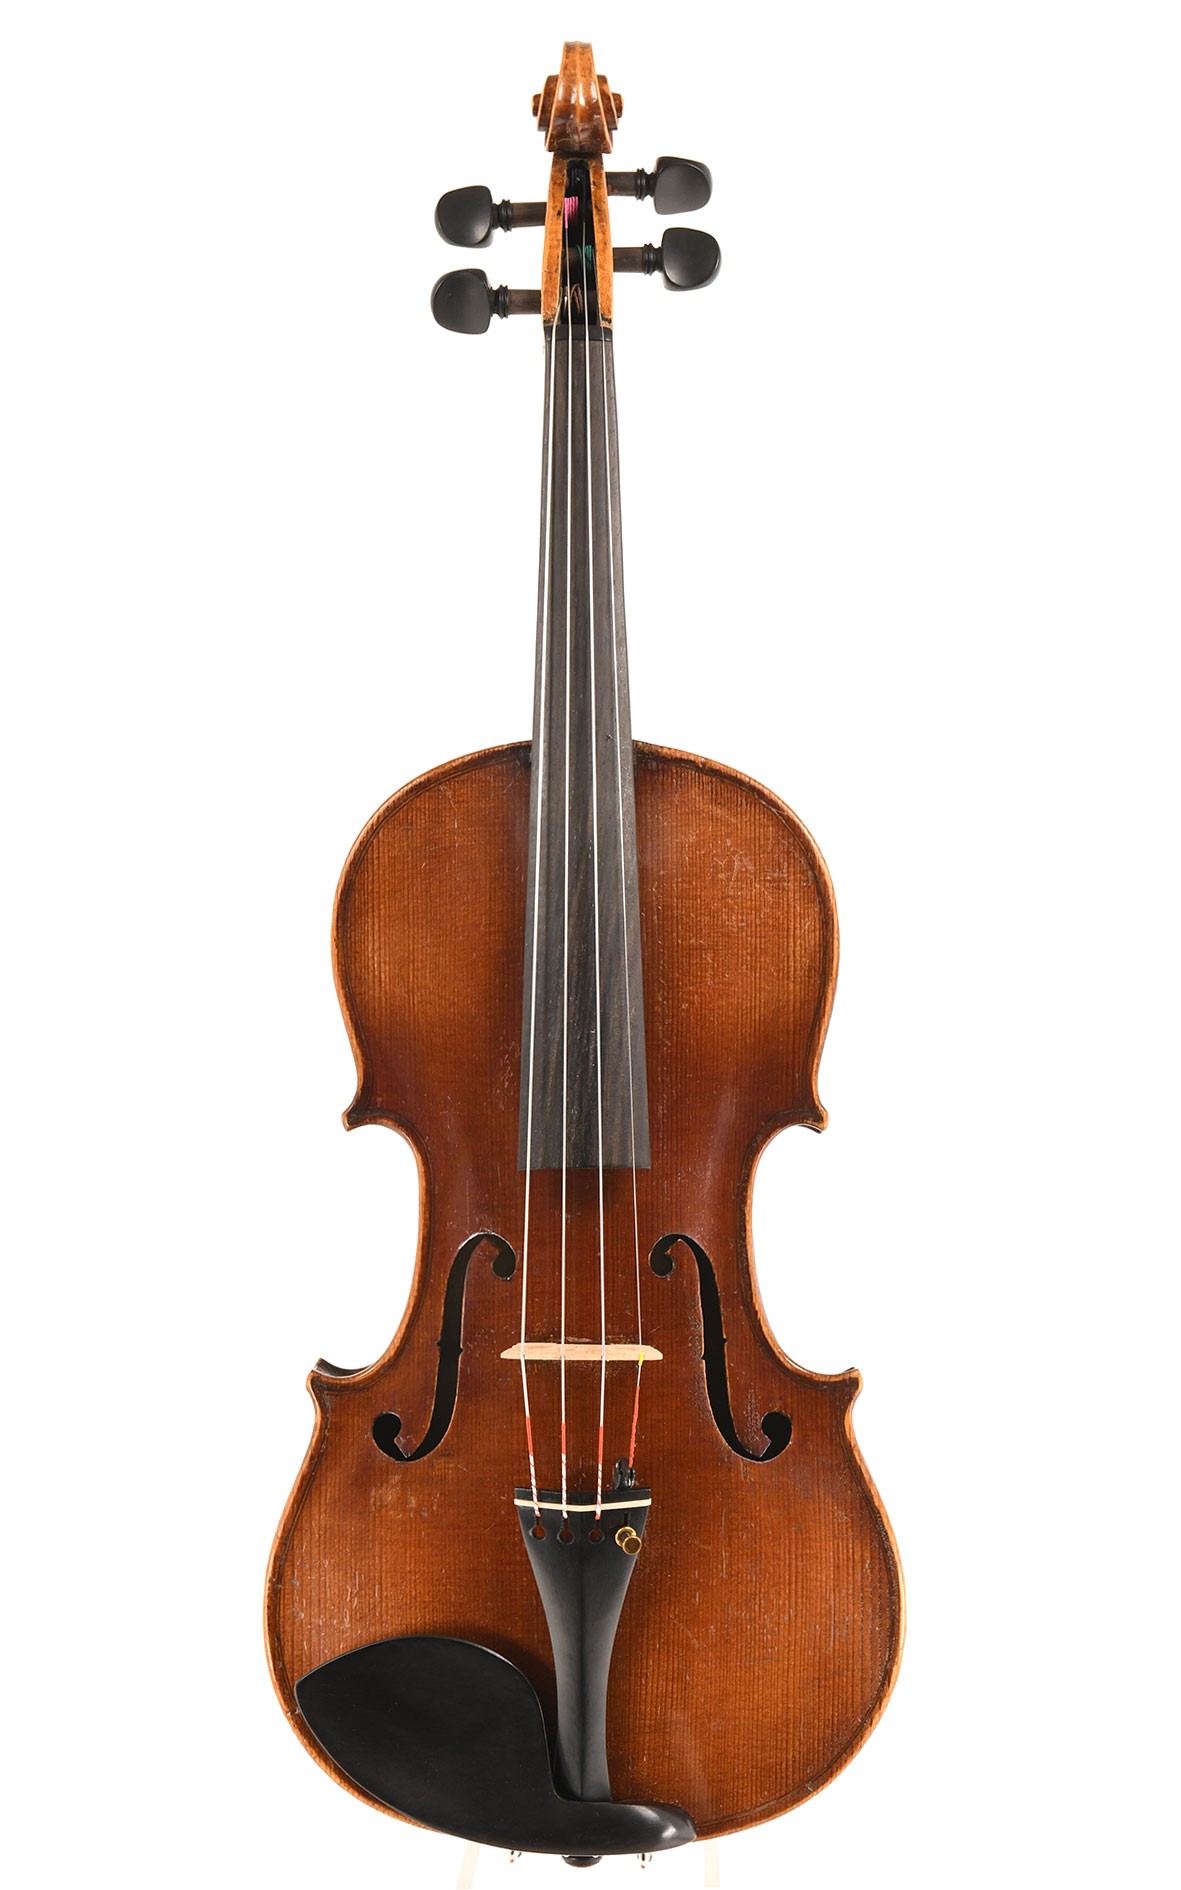 Klingenthaler Geige um 18509, wahrscheinlich F. A. Glass